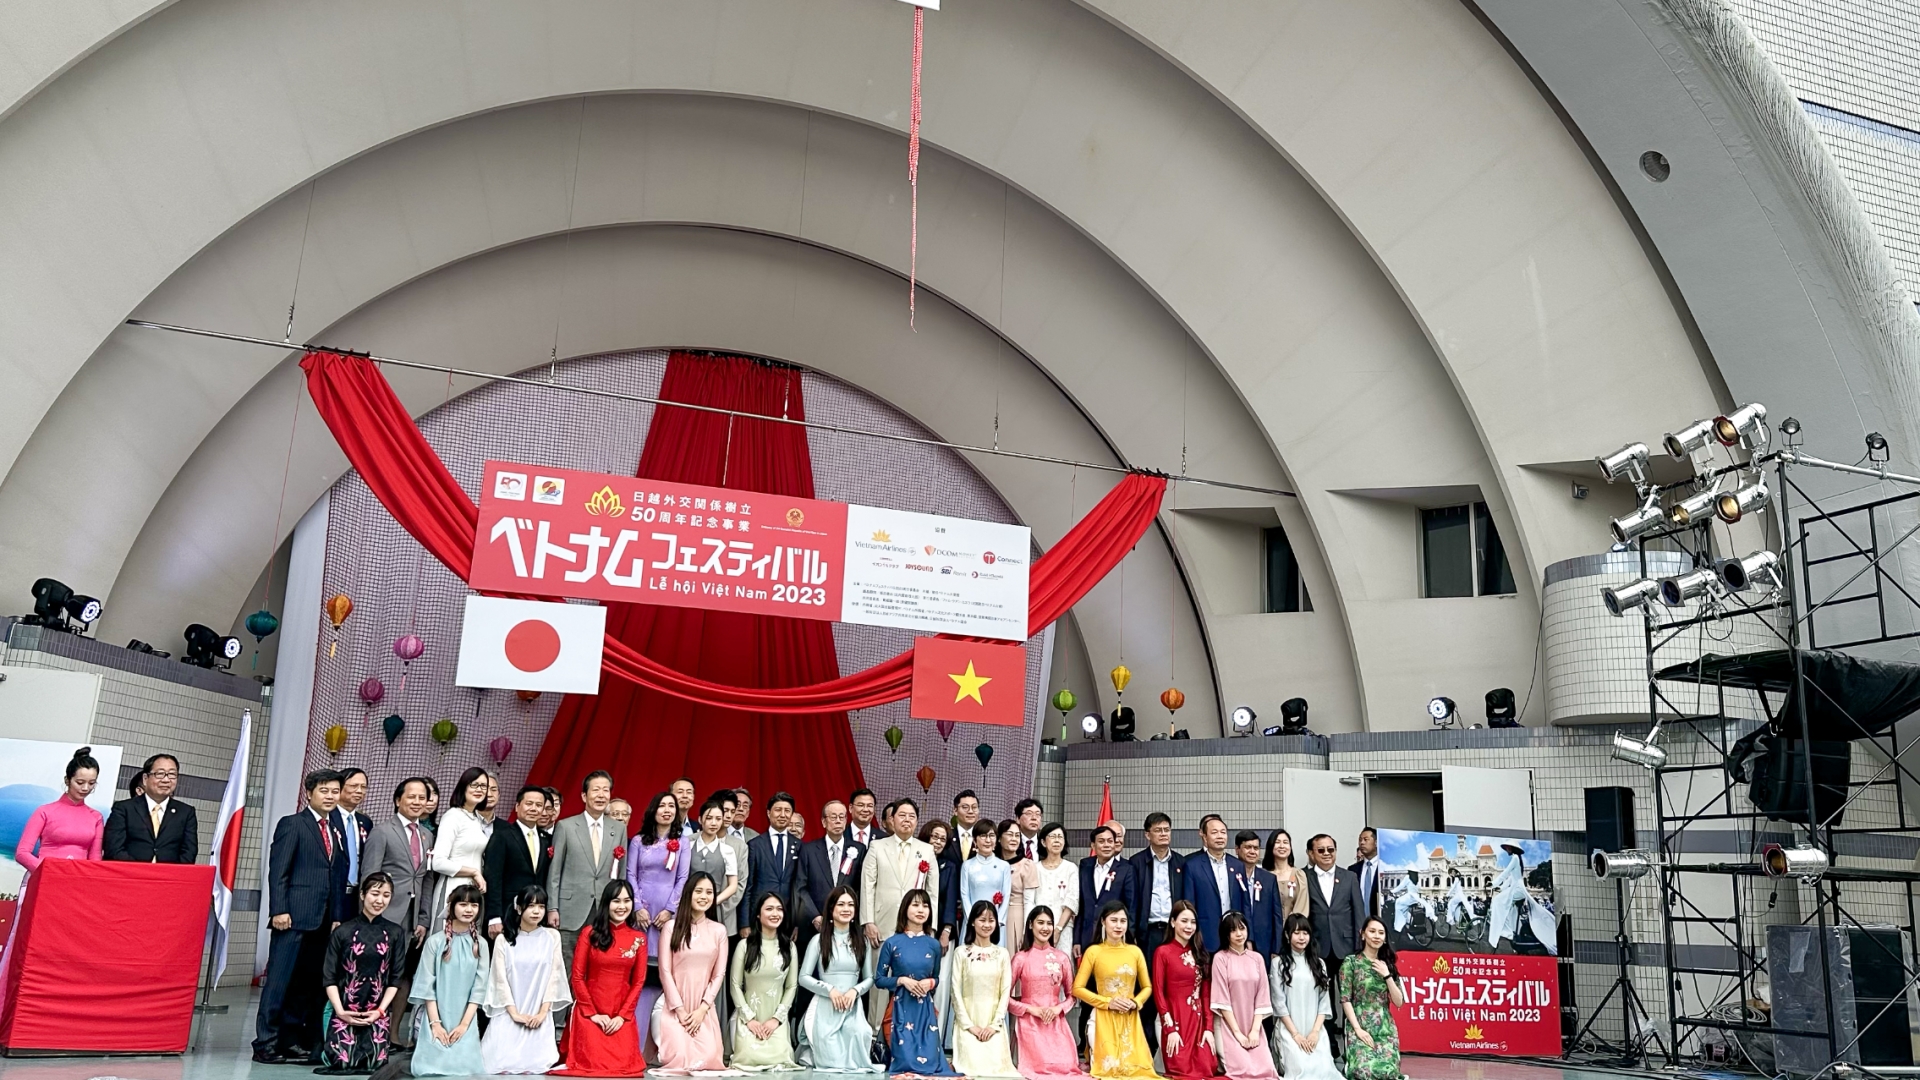 日本越南文化节——两国人民文化交流的交汇点